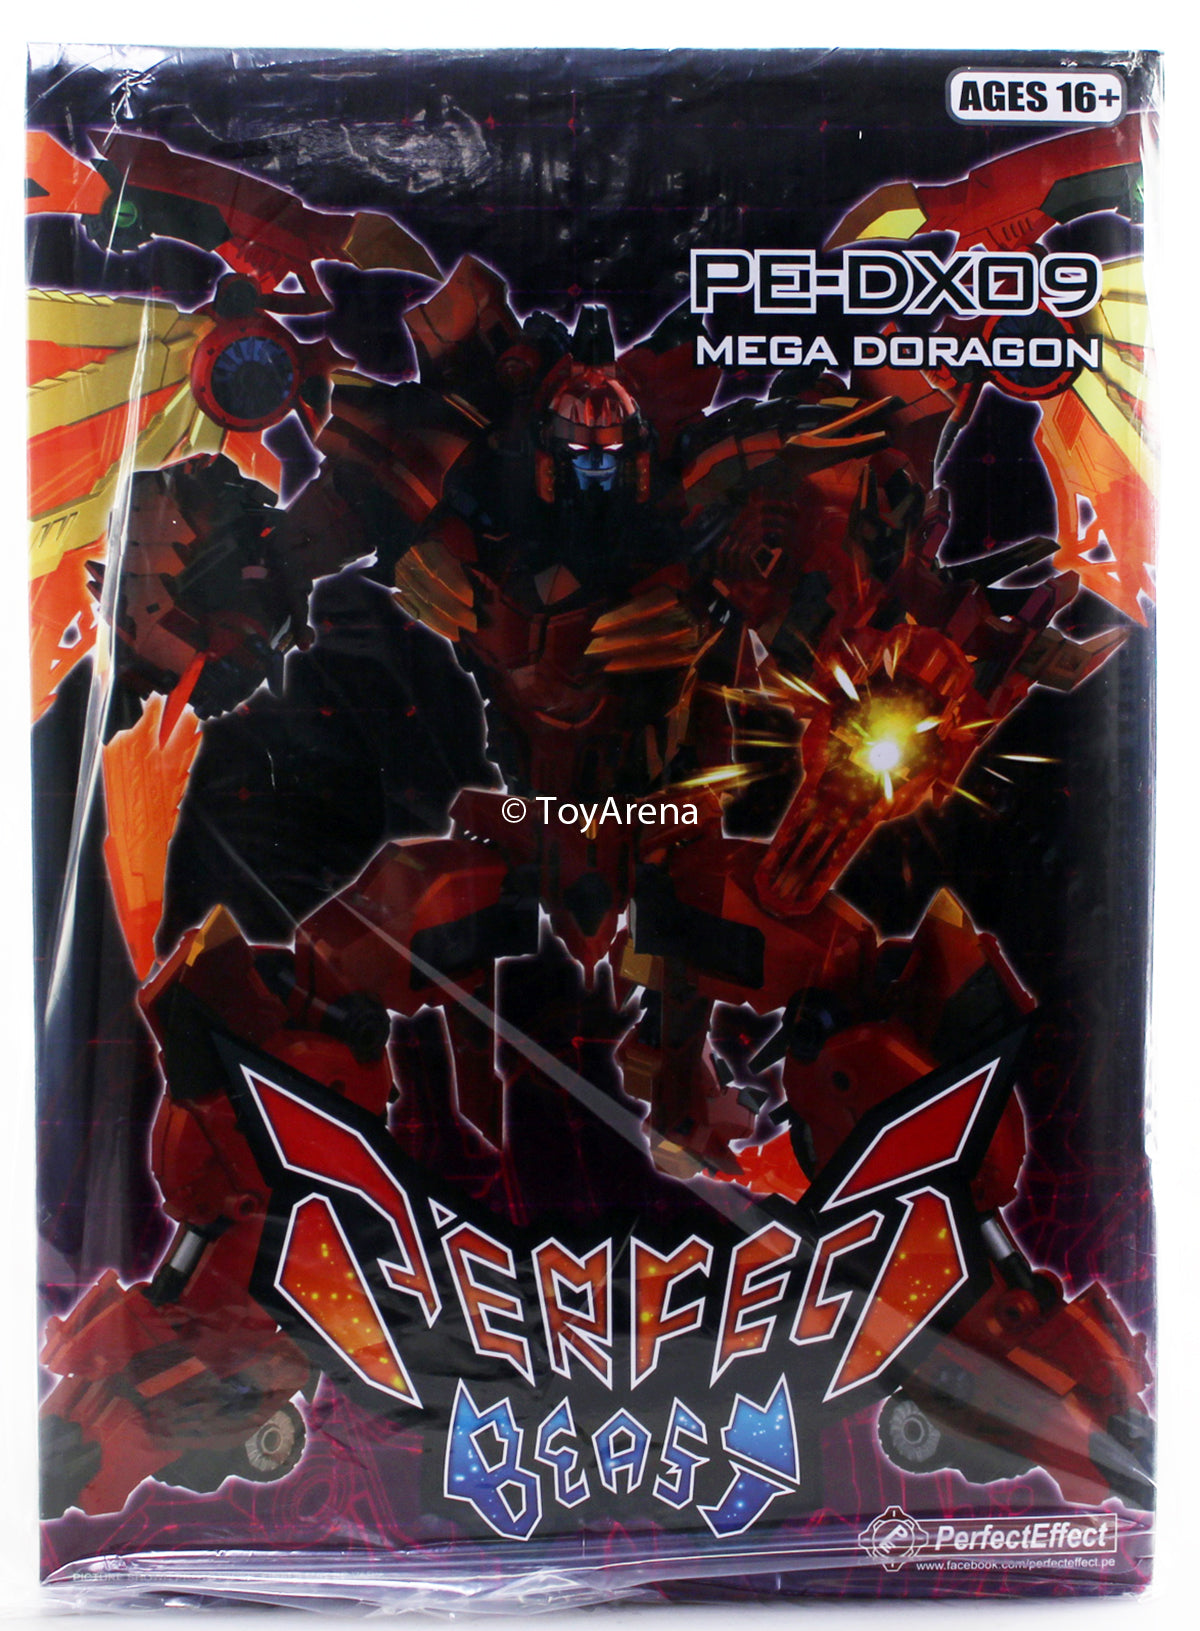 Perfect Effect PE-DX09 Mega Doragon Action Figure